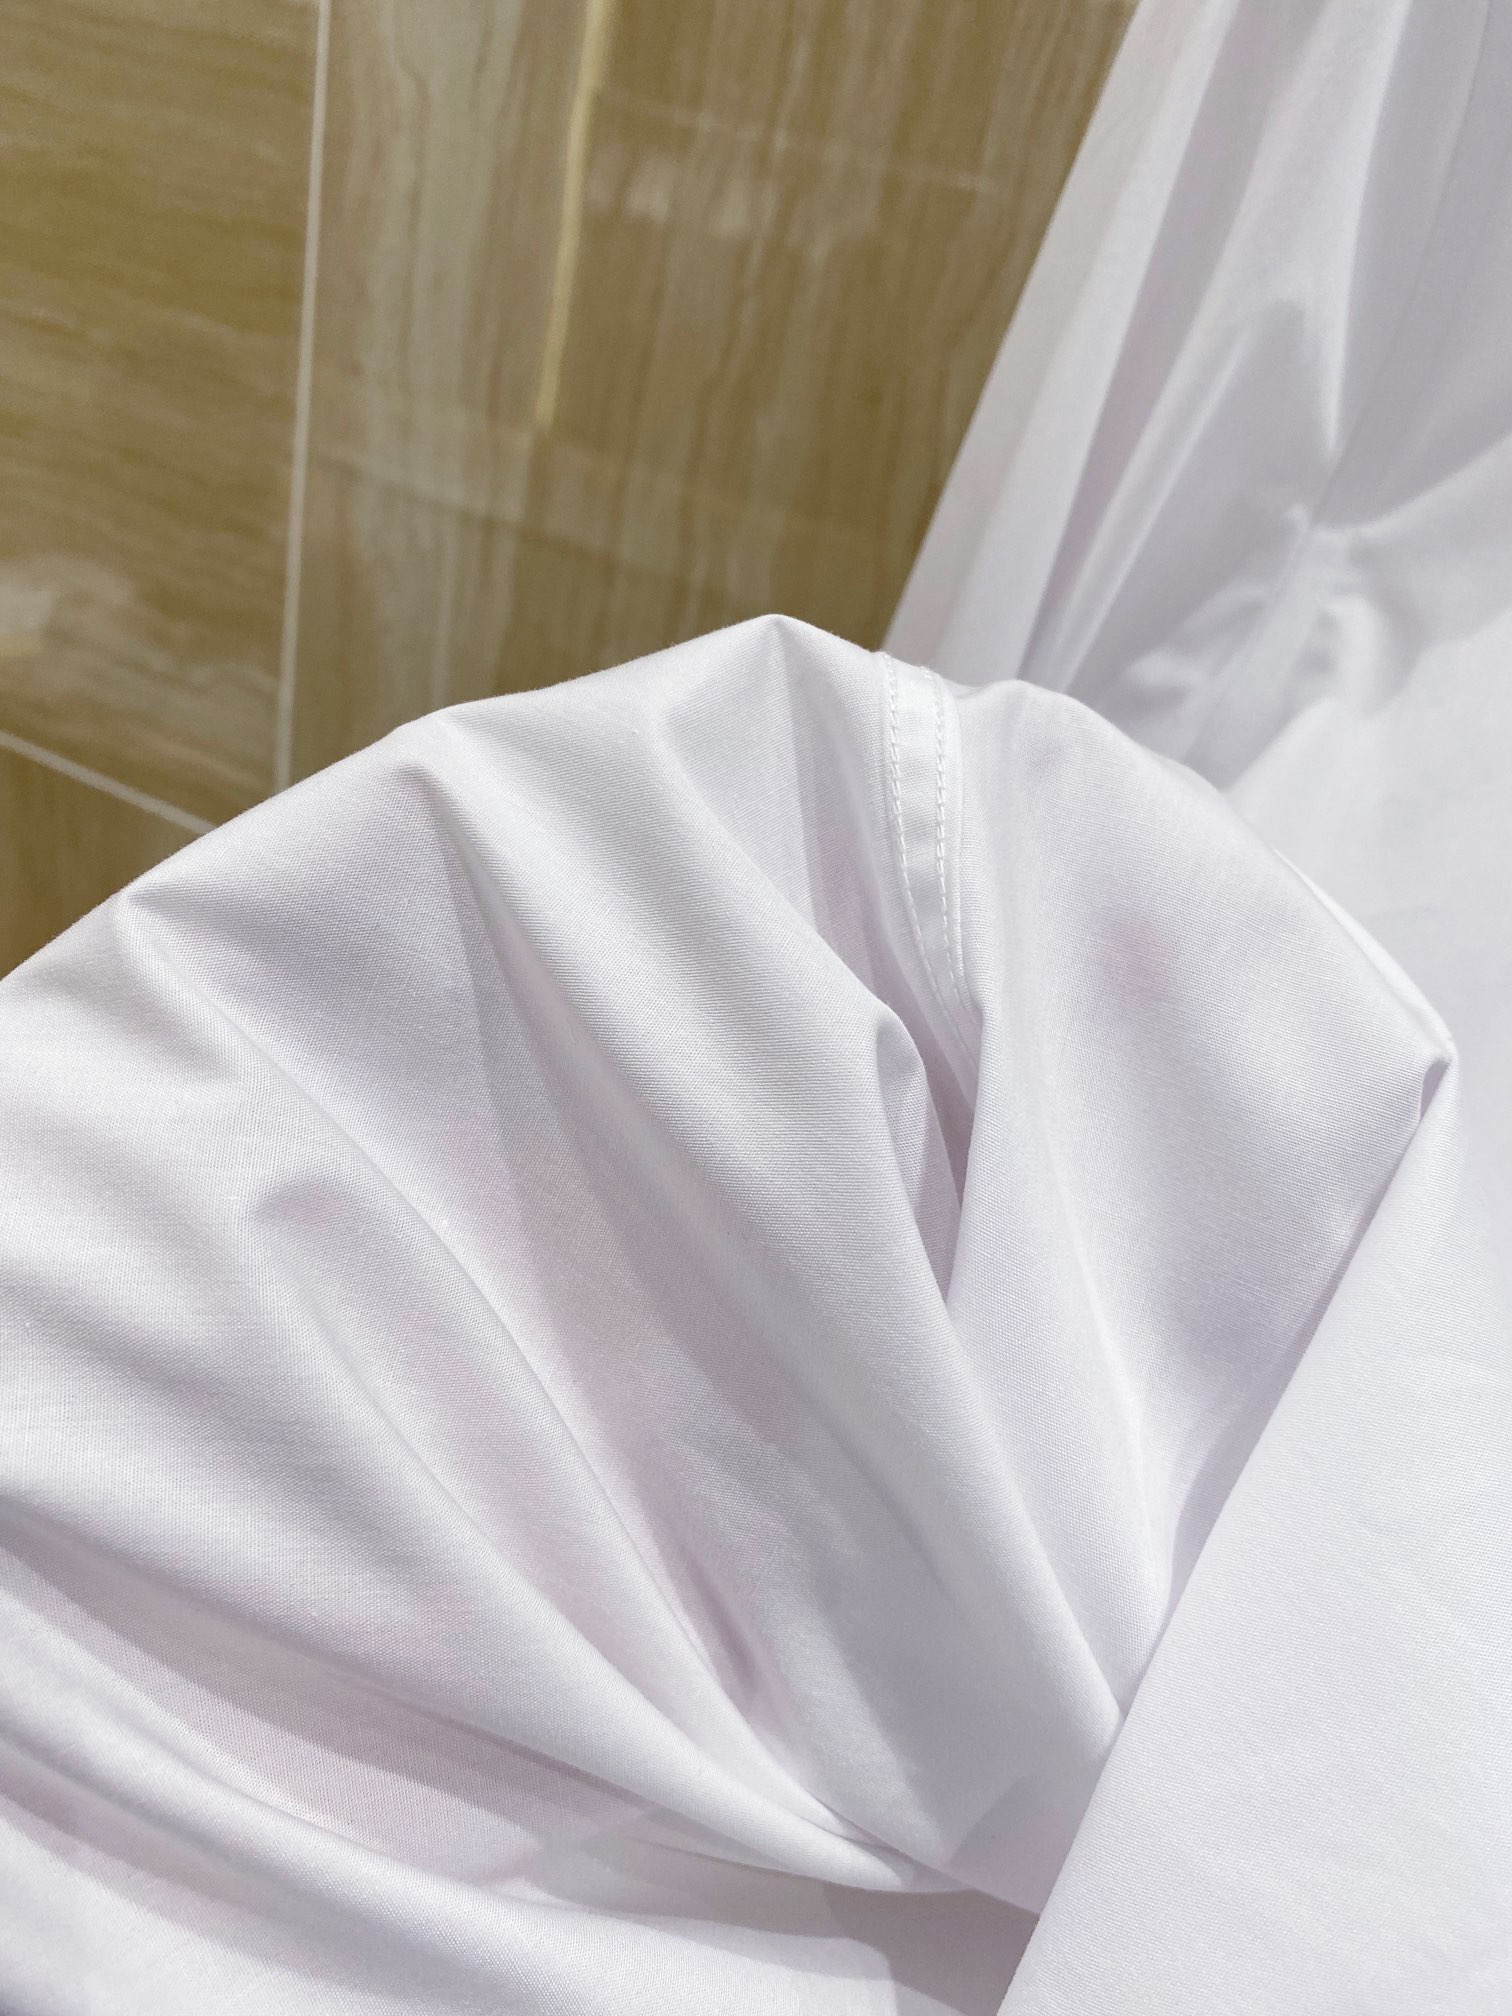 ヴェルサーチェ セットアップ偽物 シャツ トップス ビジネス 秋服 ゆったり 人気新作 シンプル 2色可選 ホワイト_8